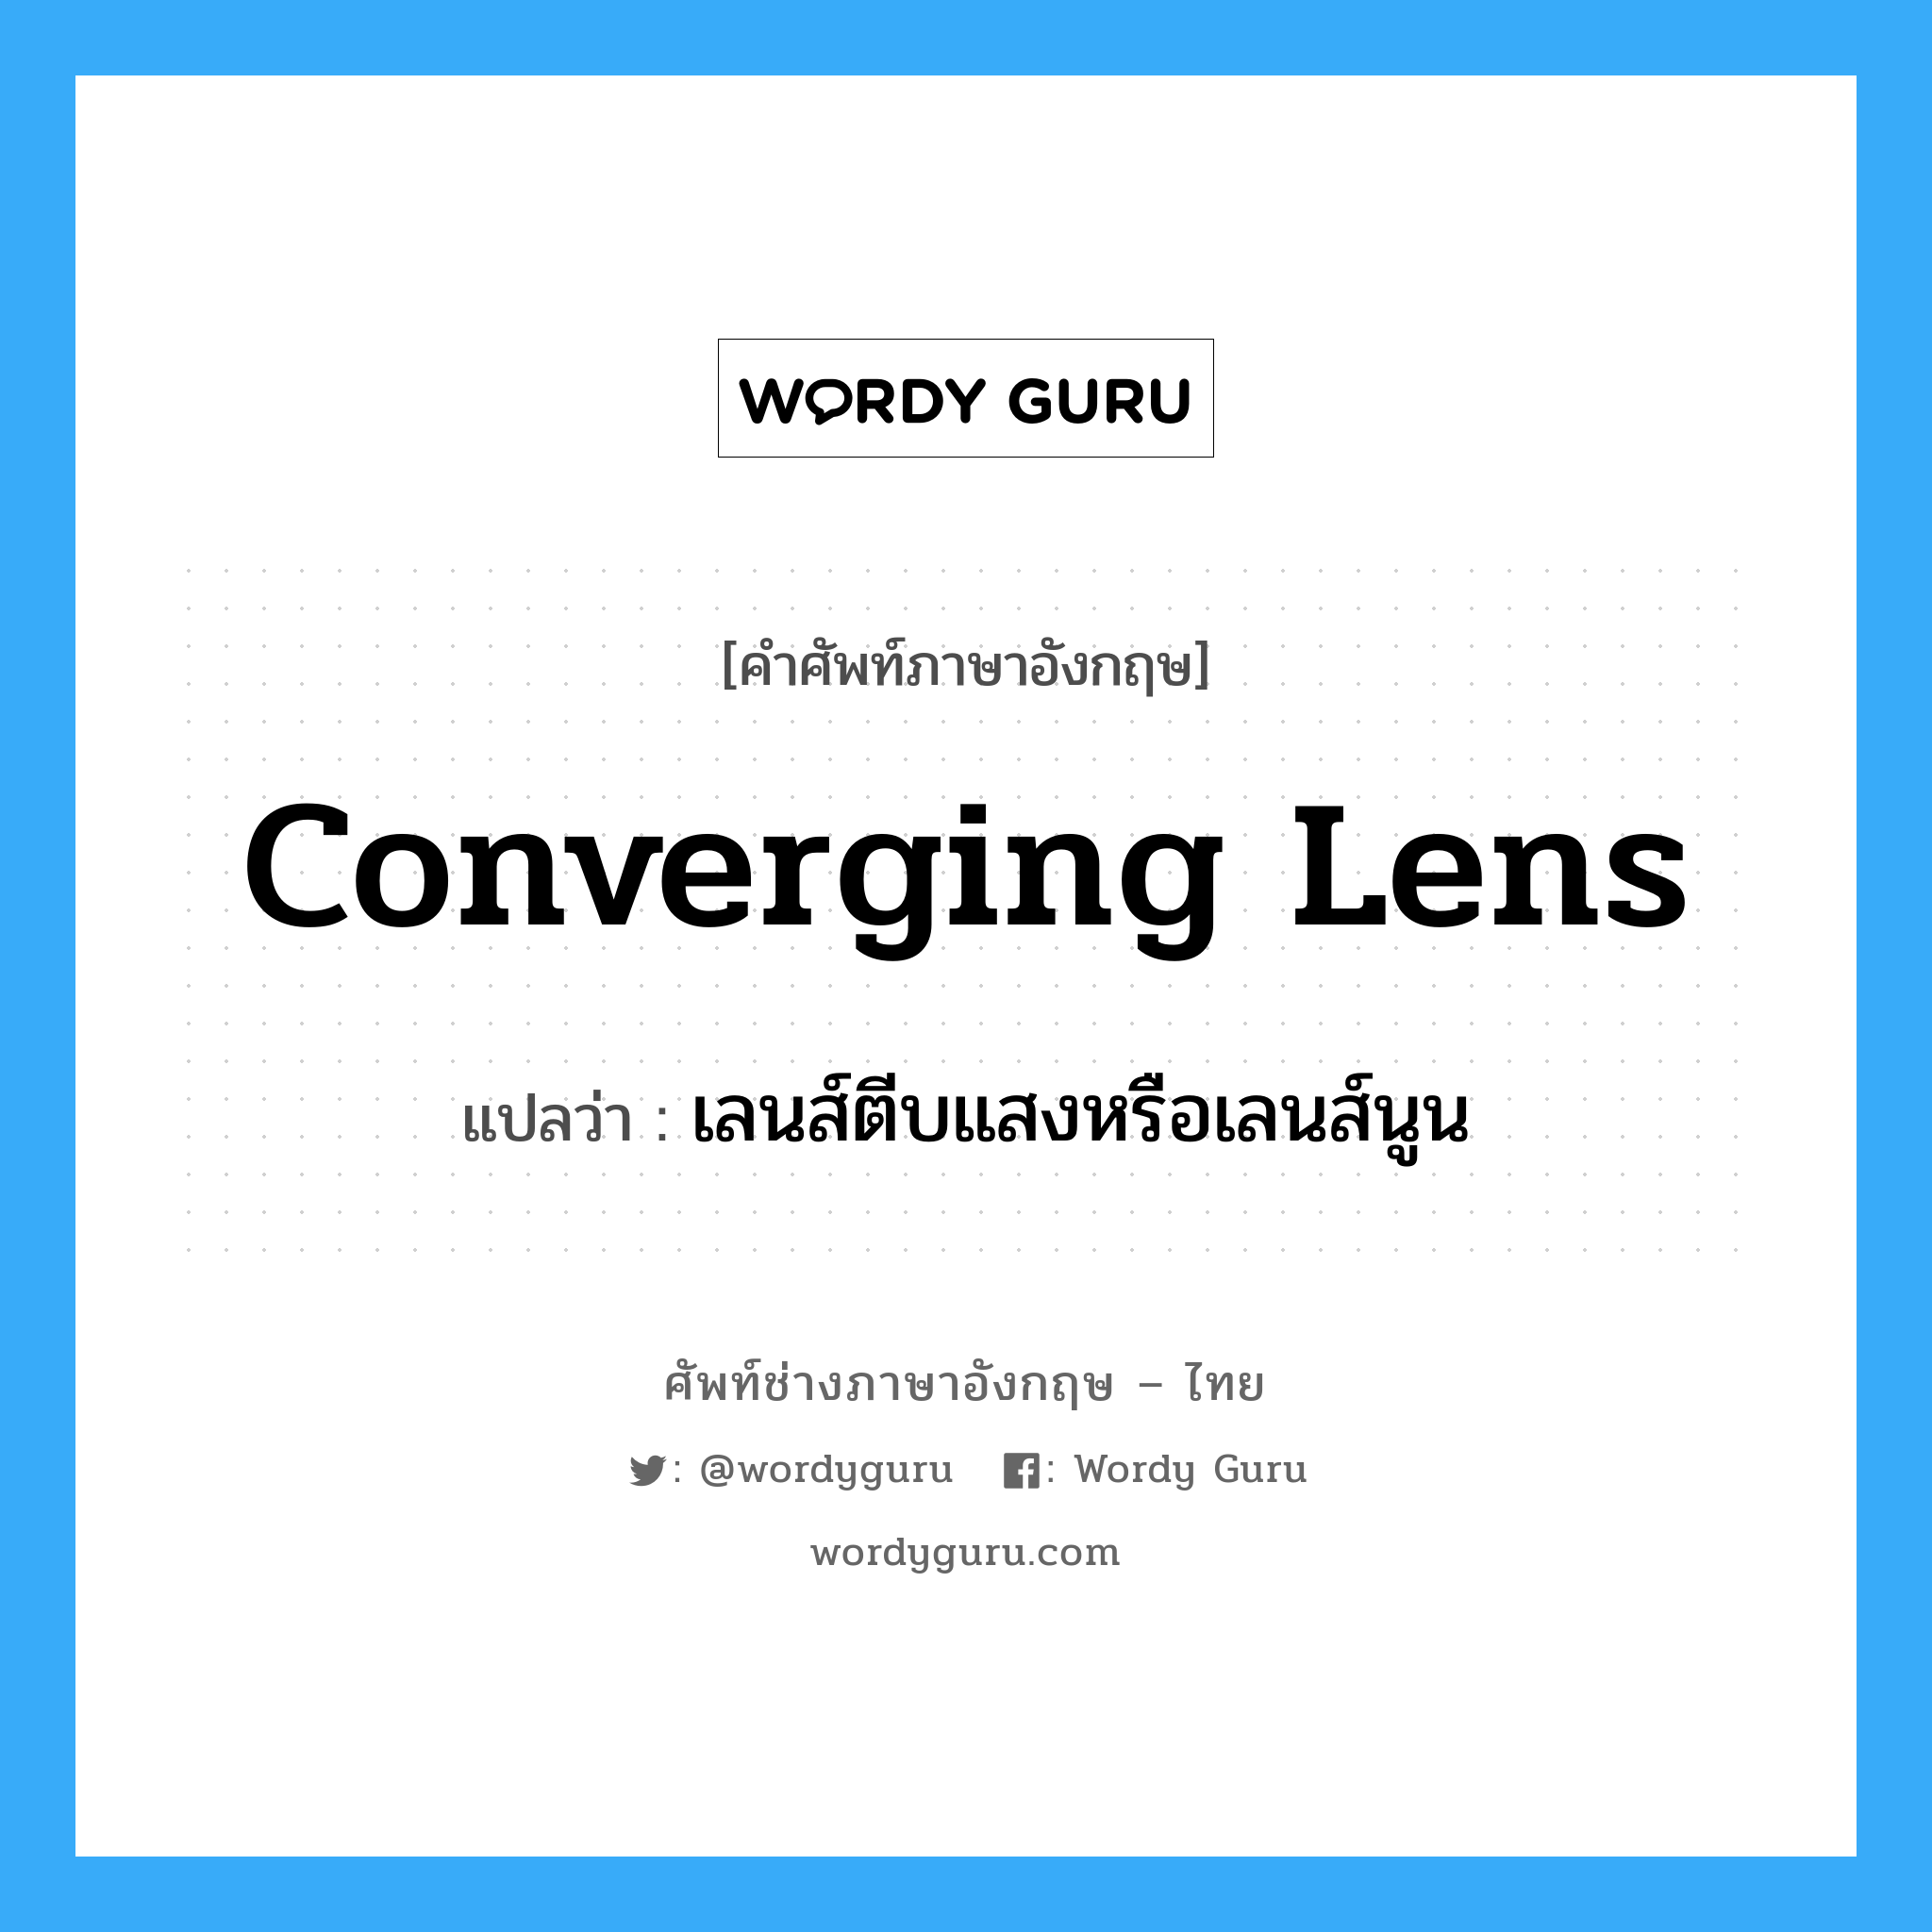 เลนส์ตีบแสงหรือเลนส์นูน ภาษาอังกฤษ?, คำศัพท์ช่างภาษาอังกฤษ - ไทย เลนส์ตีบแสงหรือเลนส์นูน คำศัพท์ภาษาอังกฤษ เลนส์ตีบแสงหรือเลนส์นูน แปลว่า converging lens